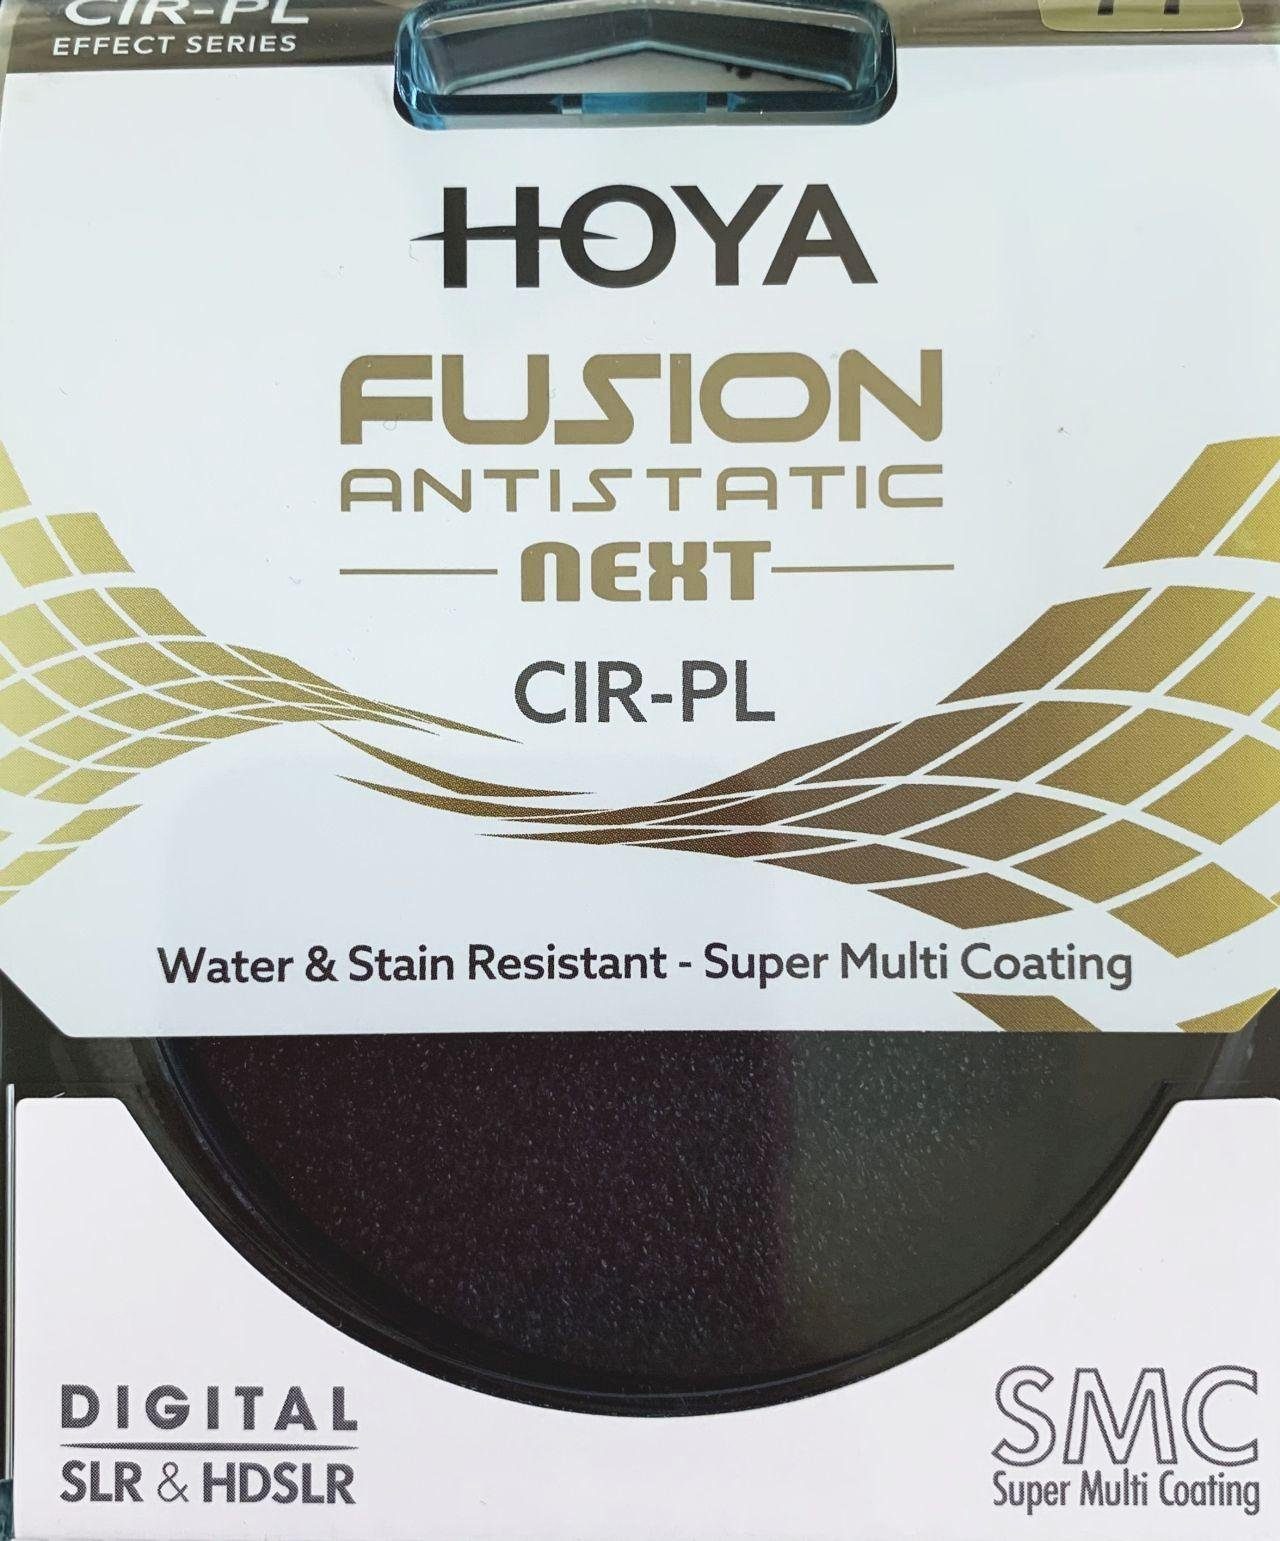 Circular Polfilter 49mm Next Hoya Antistatic Objektivzubehör Fusion